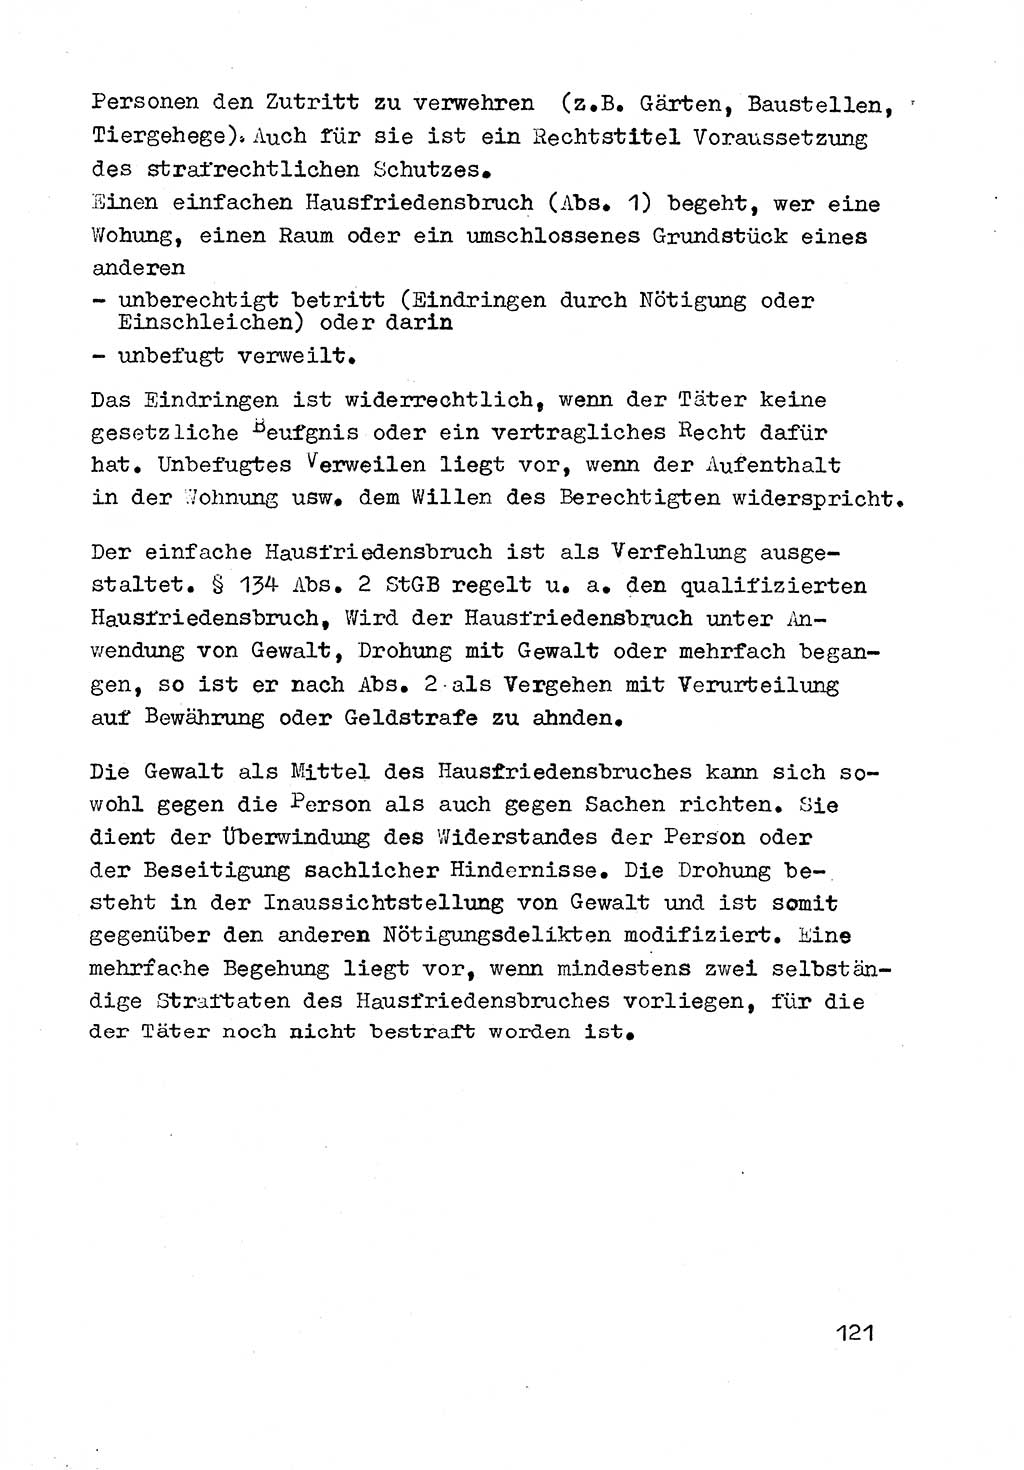 Strafrecht der DDR (Deutsche Demokratische Republik), Besonderer Teil, Lehrmaterial, Heft 3 1969, Seite 121 (Strafr. DDR BT Lehrmat. H. 3 1969, S. 121)